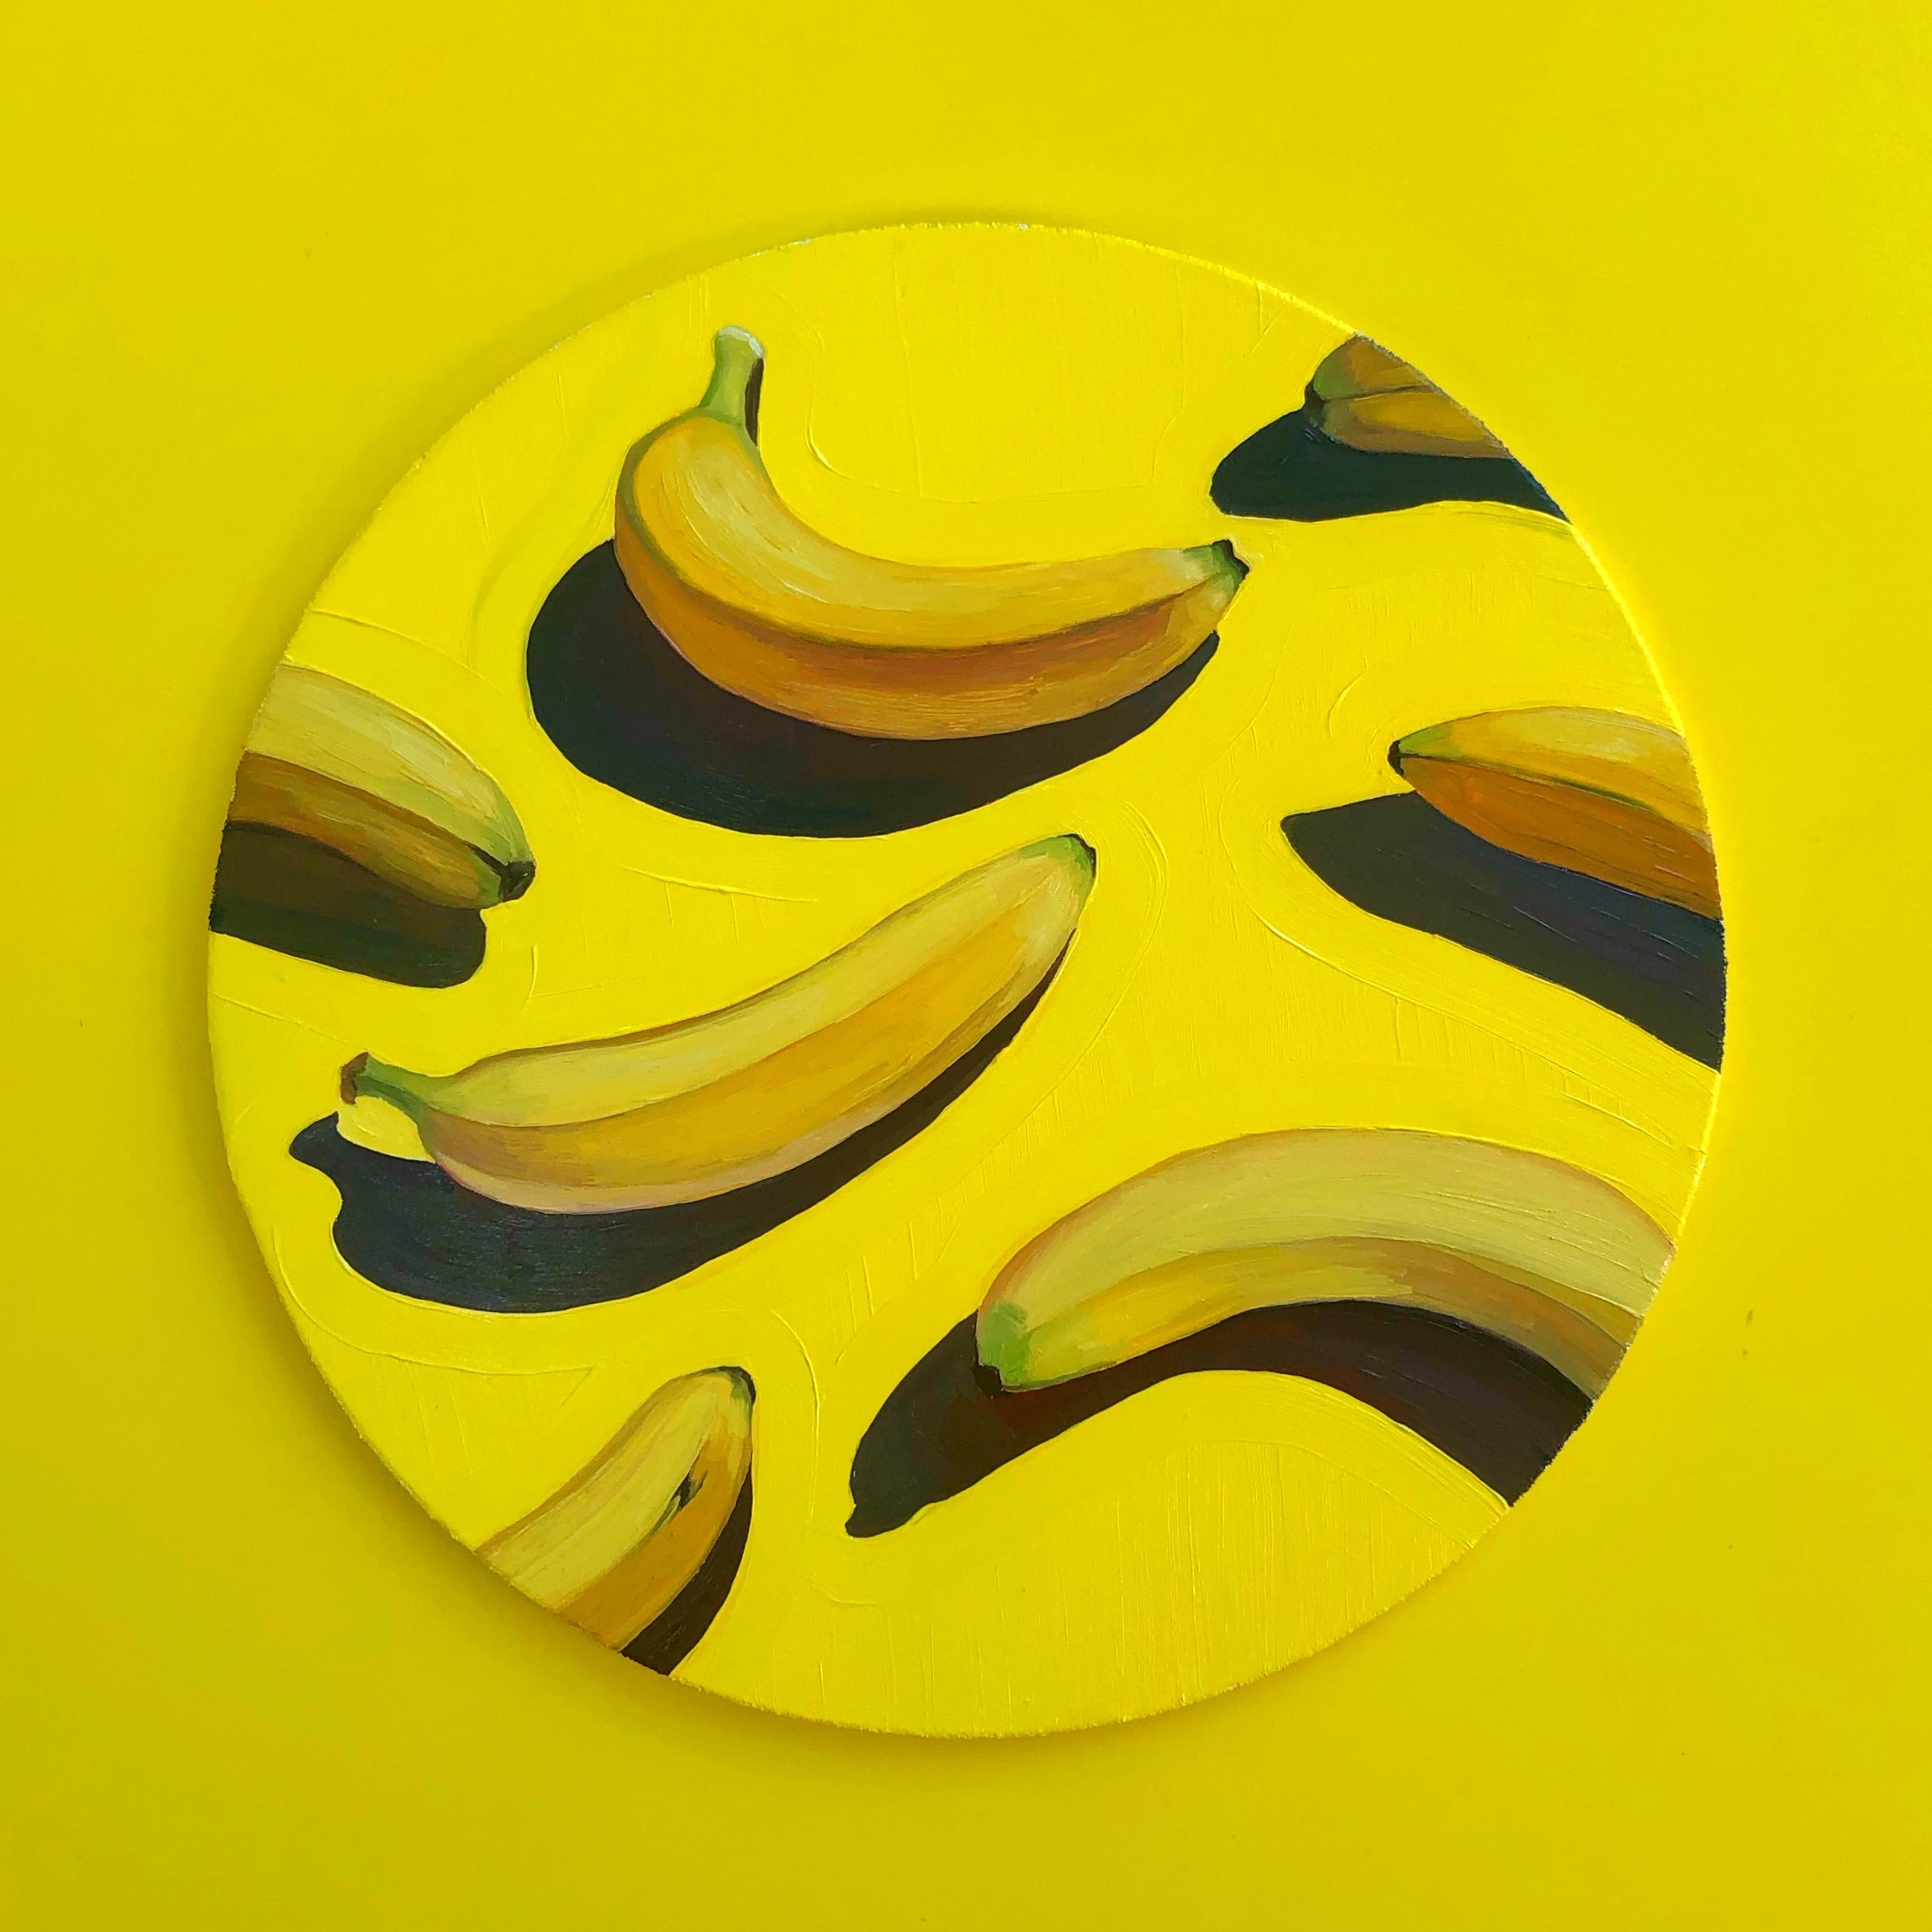 Bananas in a Circle